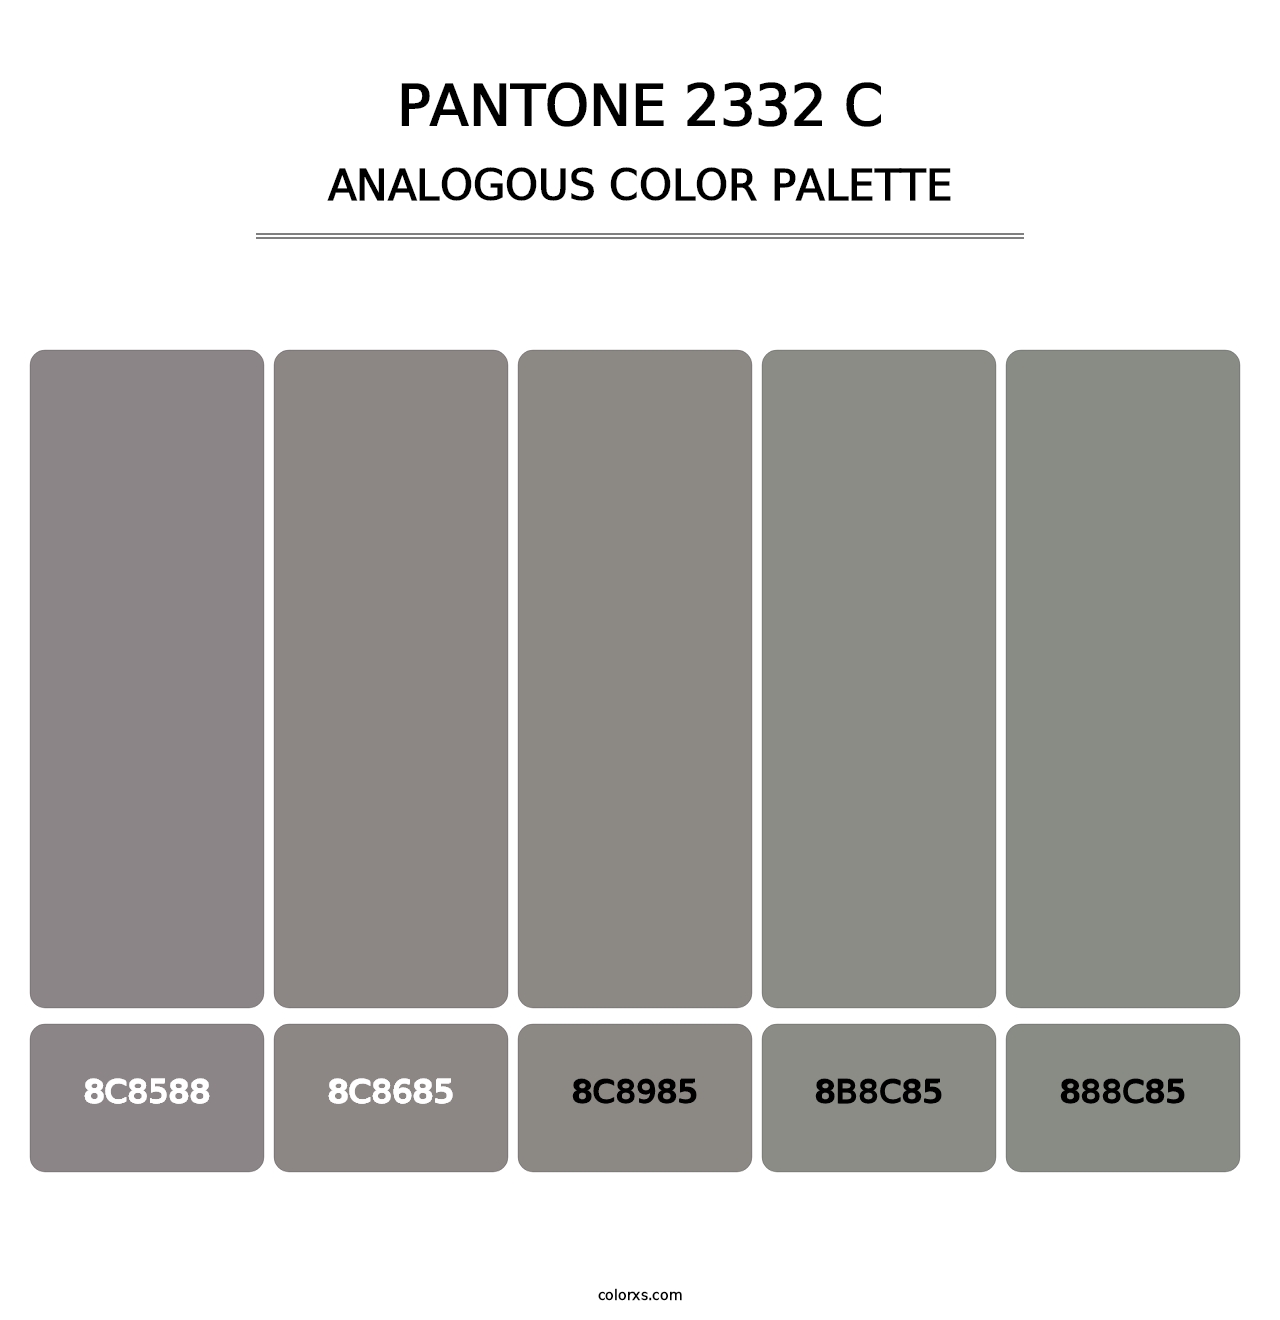 PANTONE 2332 C - Analogous Color Palette